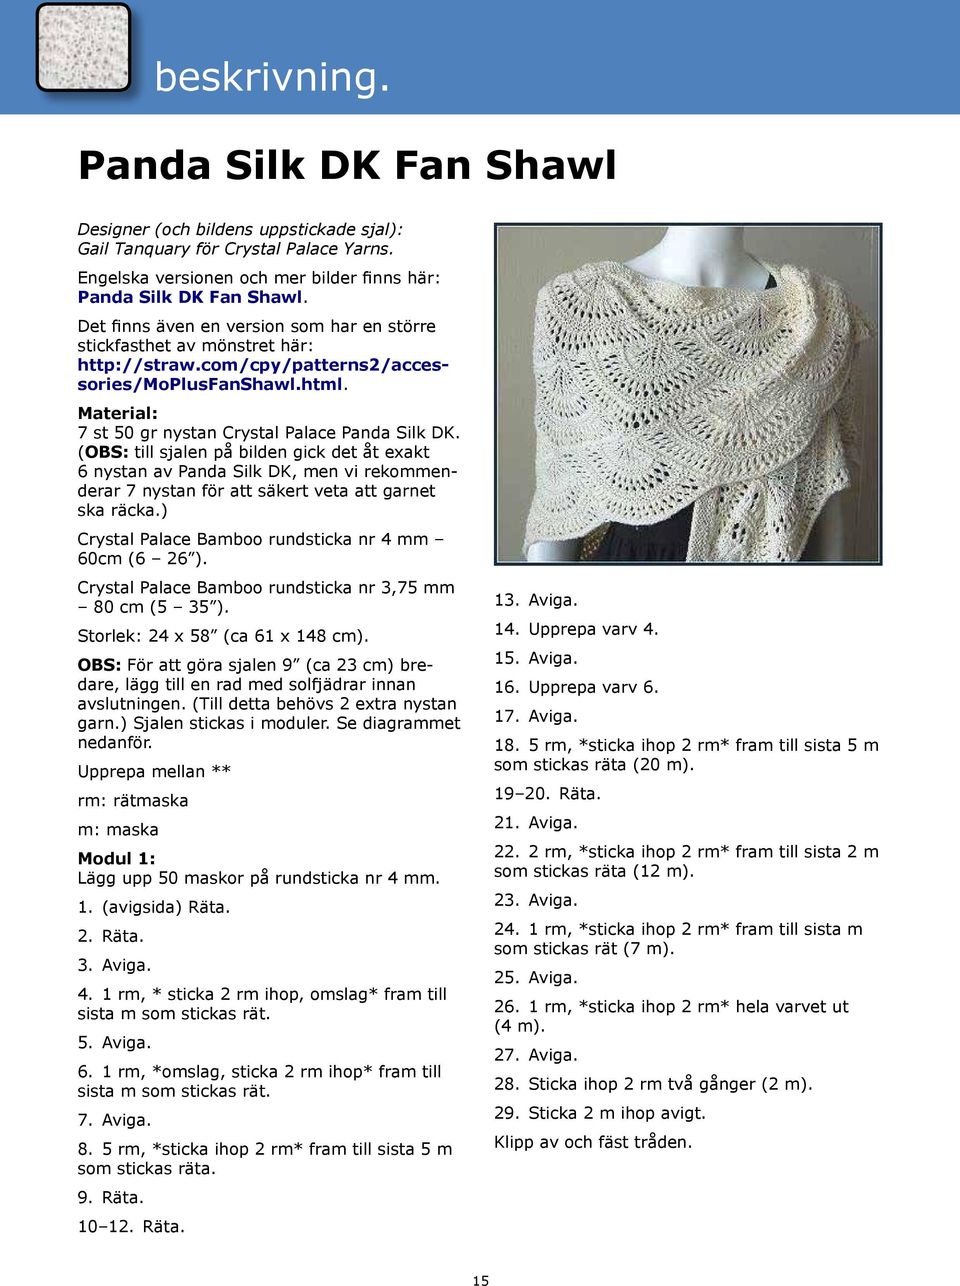 (obs: till sjalen på bilden gick det åt exakt 6 nystan av Panda Silk DK, men vi rekommenderar 7 nystan för att säkert veta att garnet ska räcka.) Crystal Palace Bamboo rundsticka nr 4 mm 60cm (6 26 ).